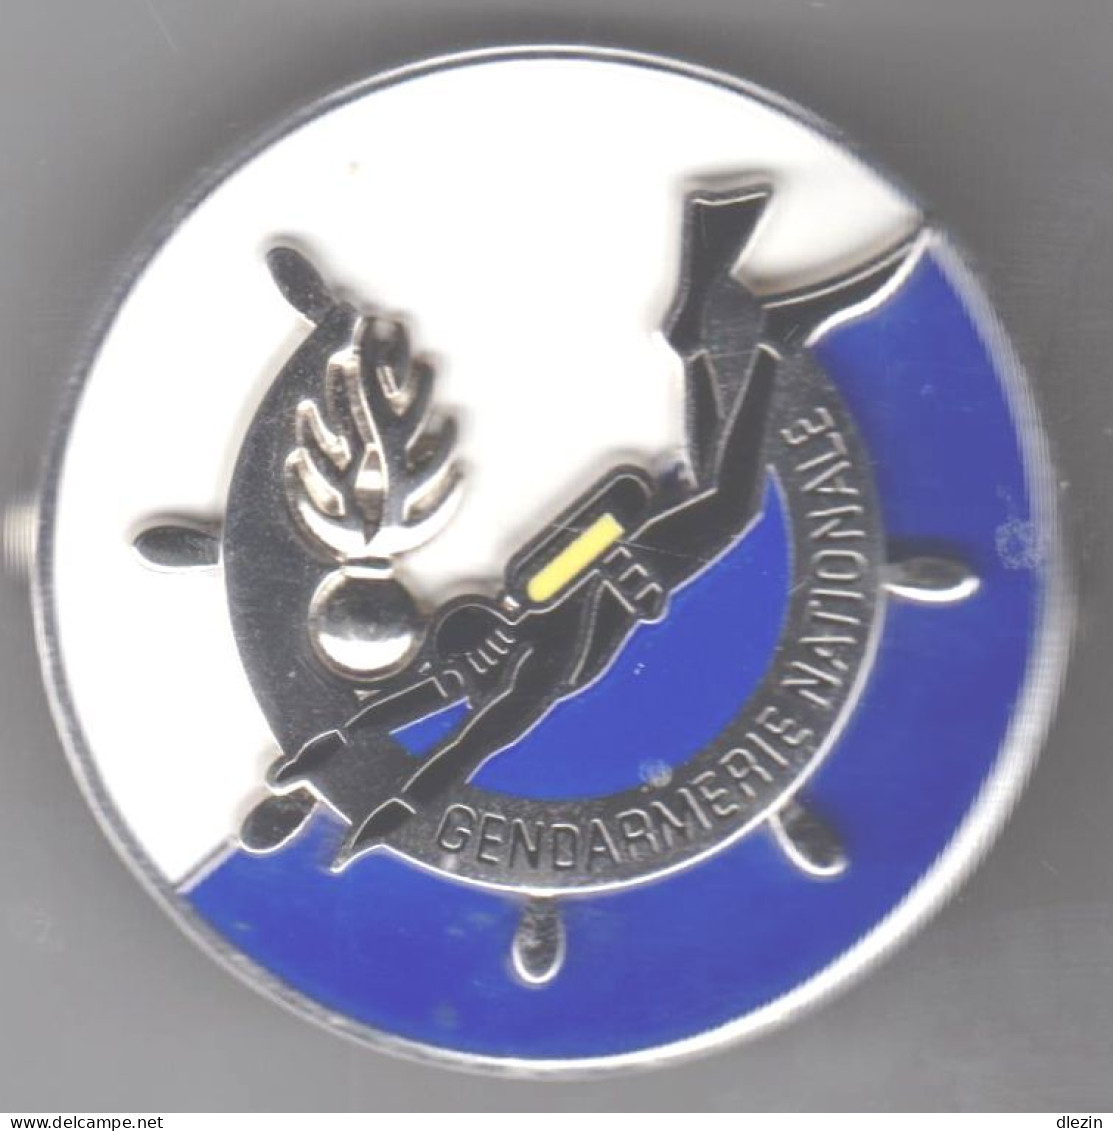 Gendarmerie Nationale. Diplome De Plongeur. Ø 44 Mm. Boussemart Par Promodis. Attache 2 Pin's. - Esercito